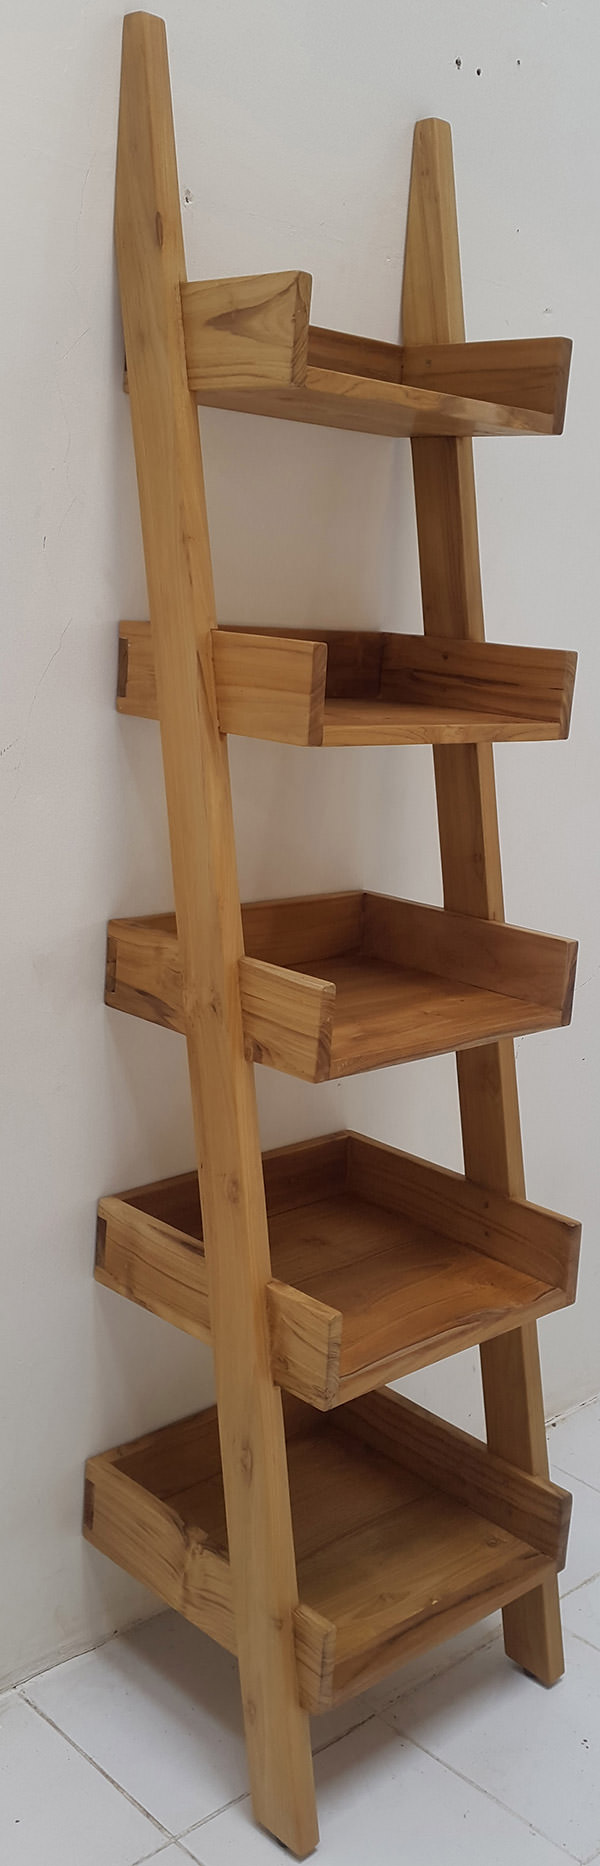 Teak wooden ladder for books